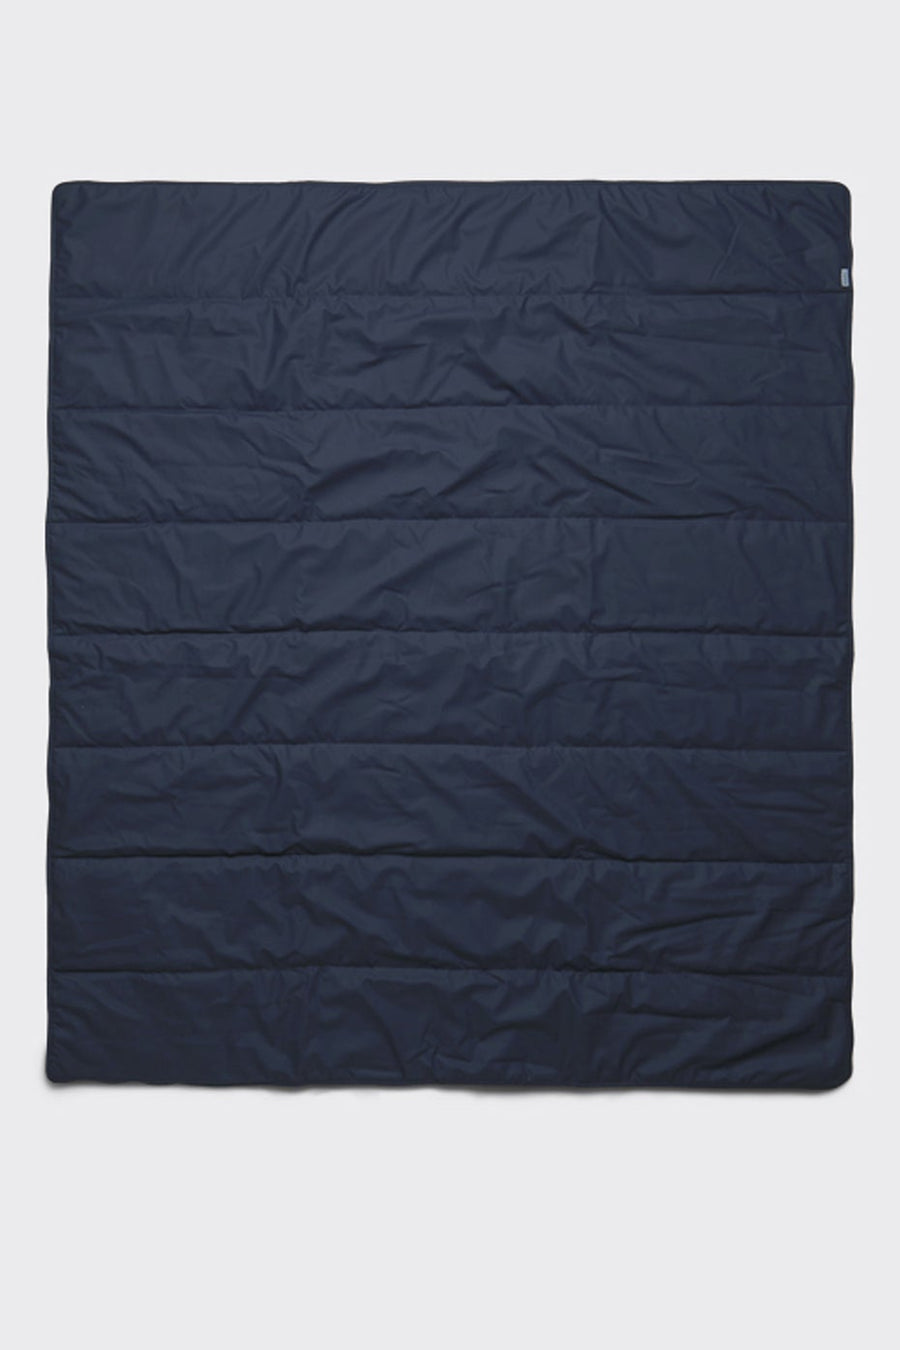 Blanket Navy OS